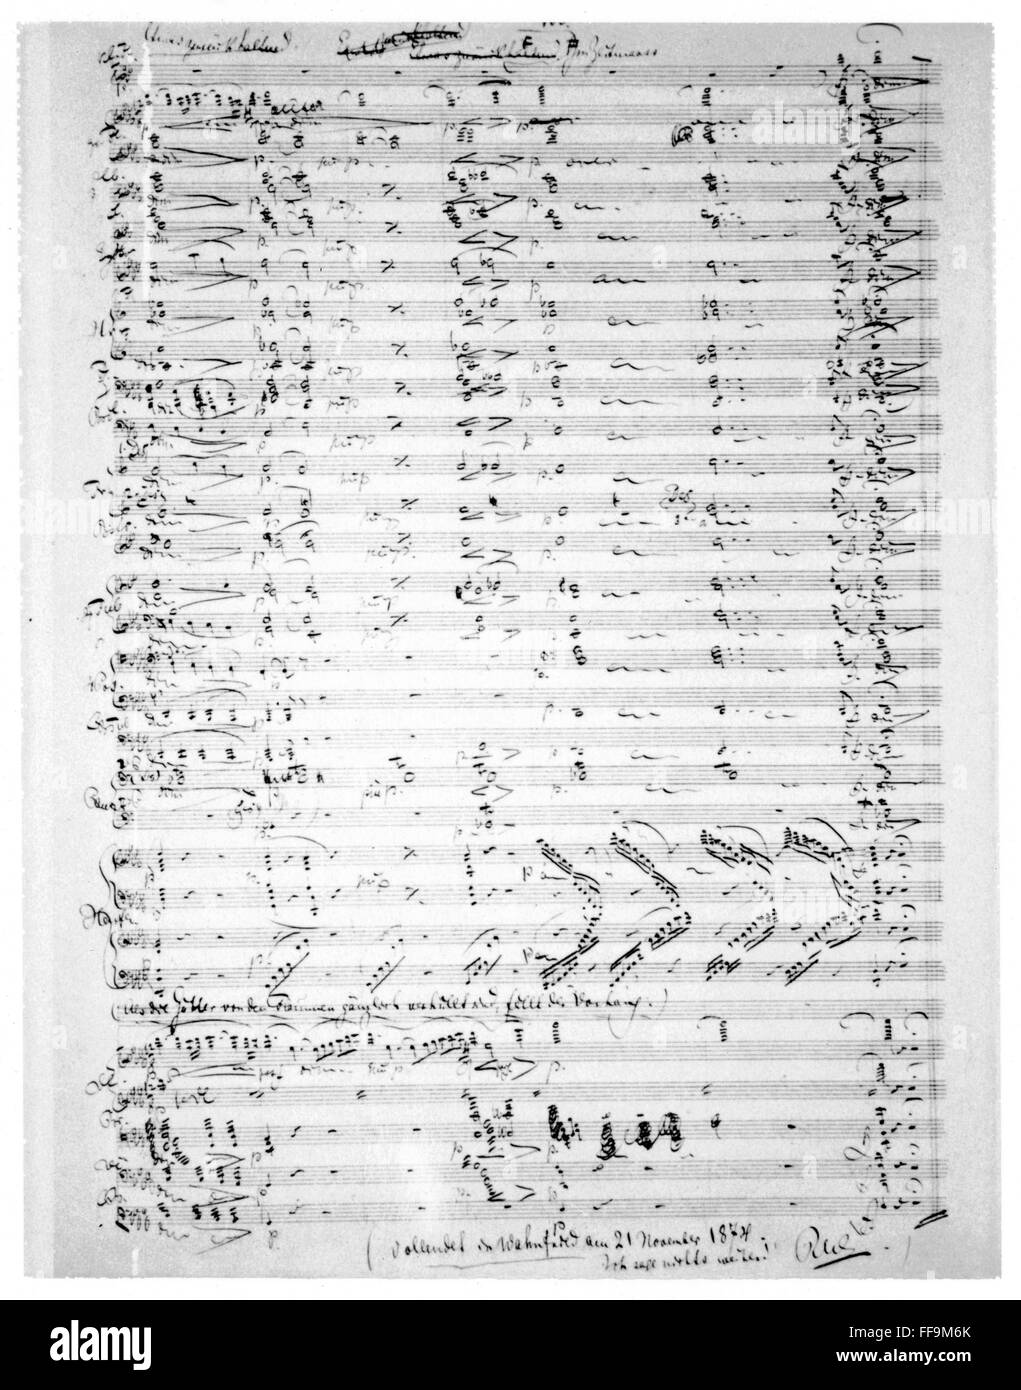 WAGNER: GOTTERDAMMERUNG. /nRichard Wagner (1813-1883). German composer. Manuscript for 'Gotterdammerung', 1874. Stock Photo